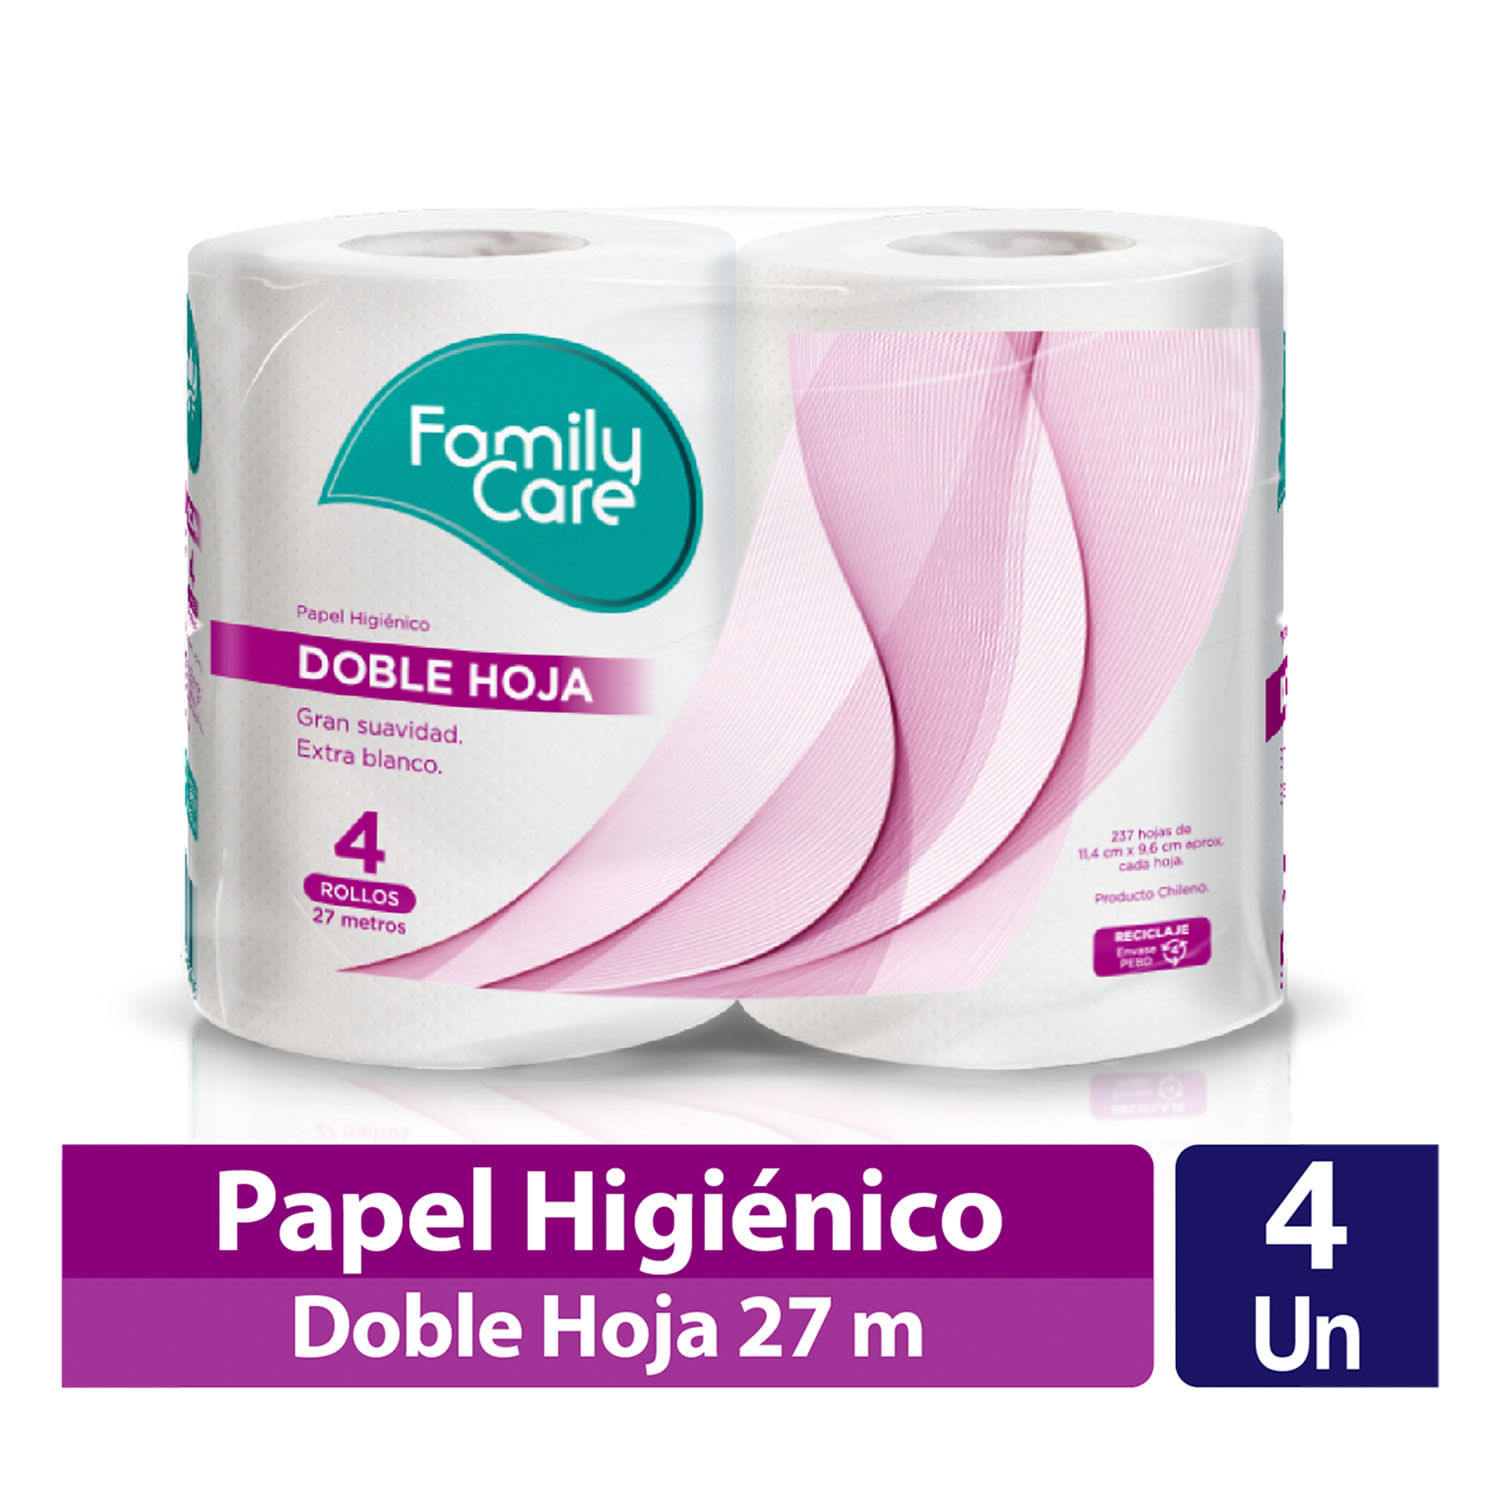 Papel Higiénico Húmedo Confort 3 Paquetes de 40 un.